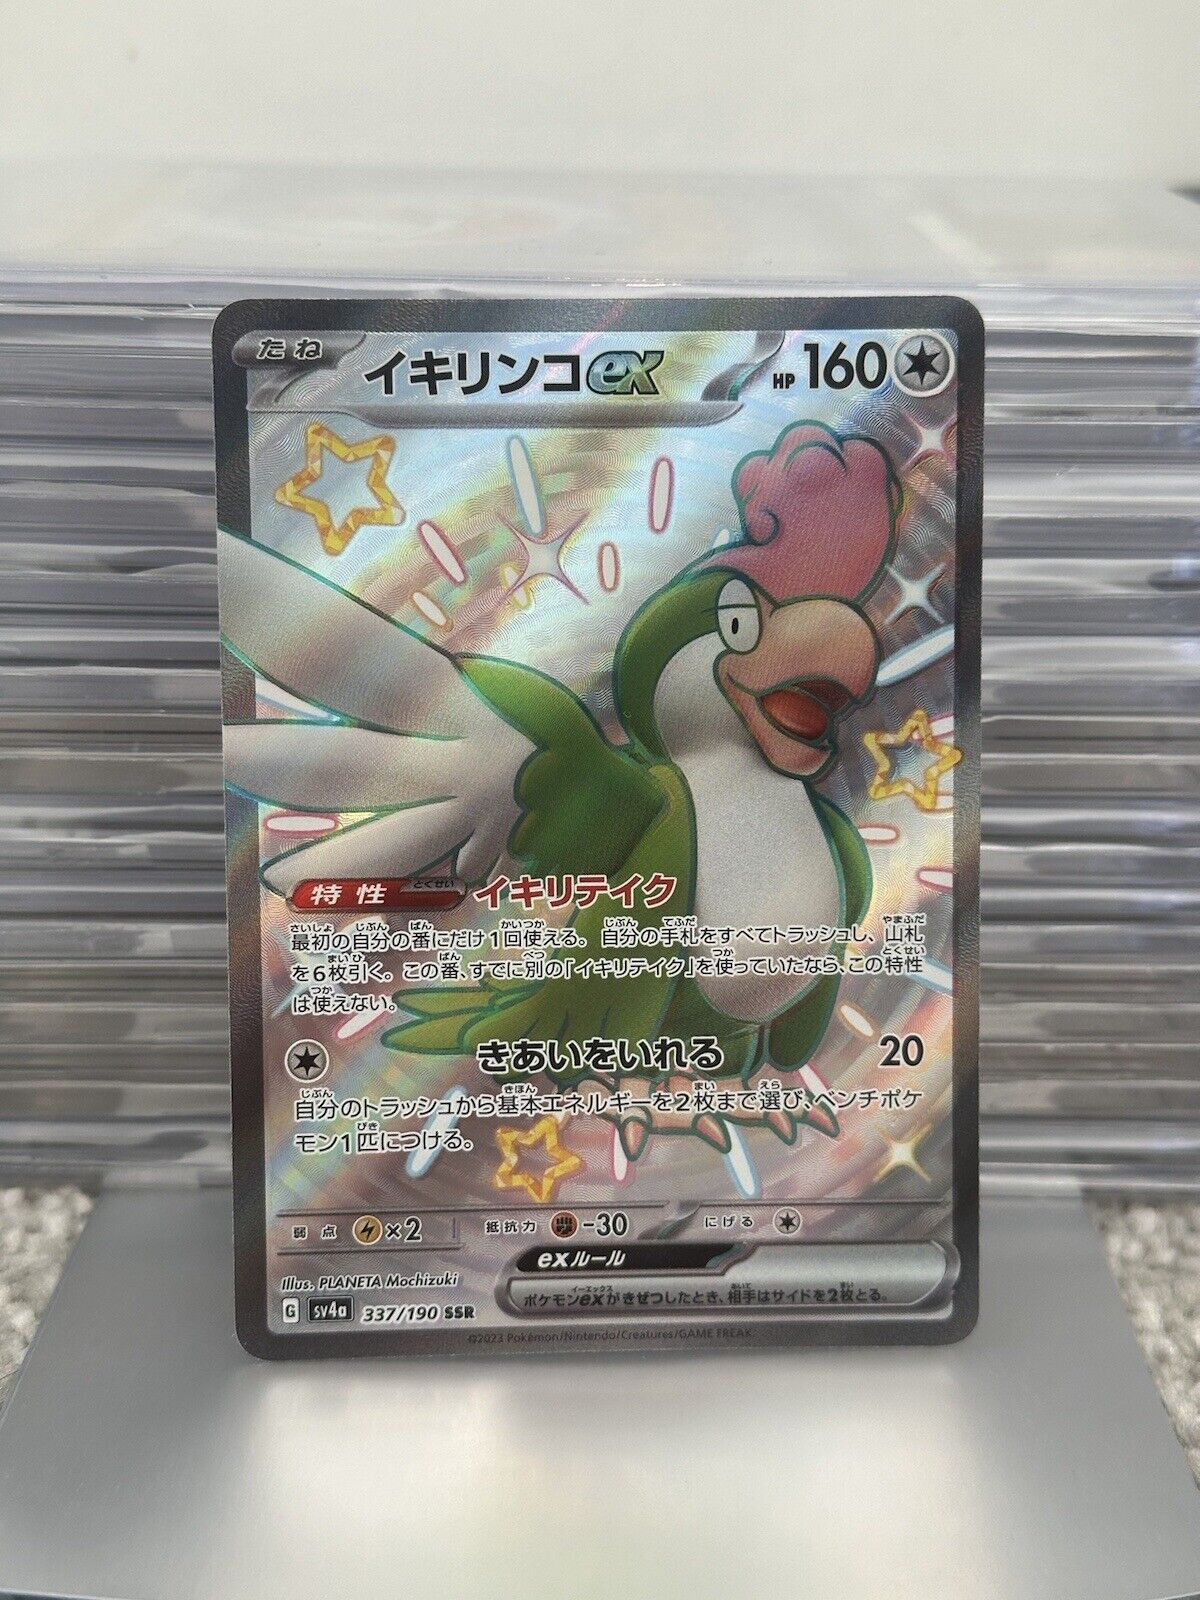 Squawkabilly ex 337/190 Full Art Shiny Japanese Card - Pokemon Shiny Treasure ex